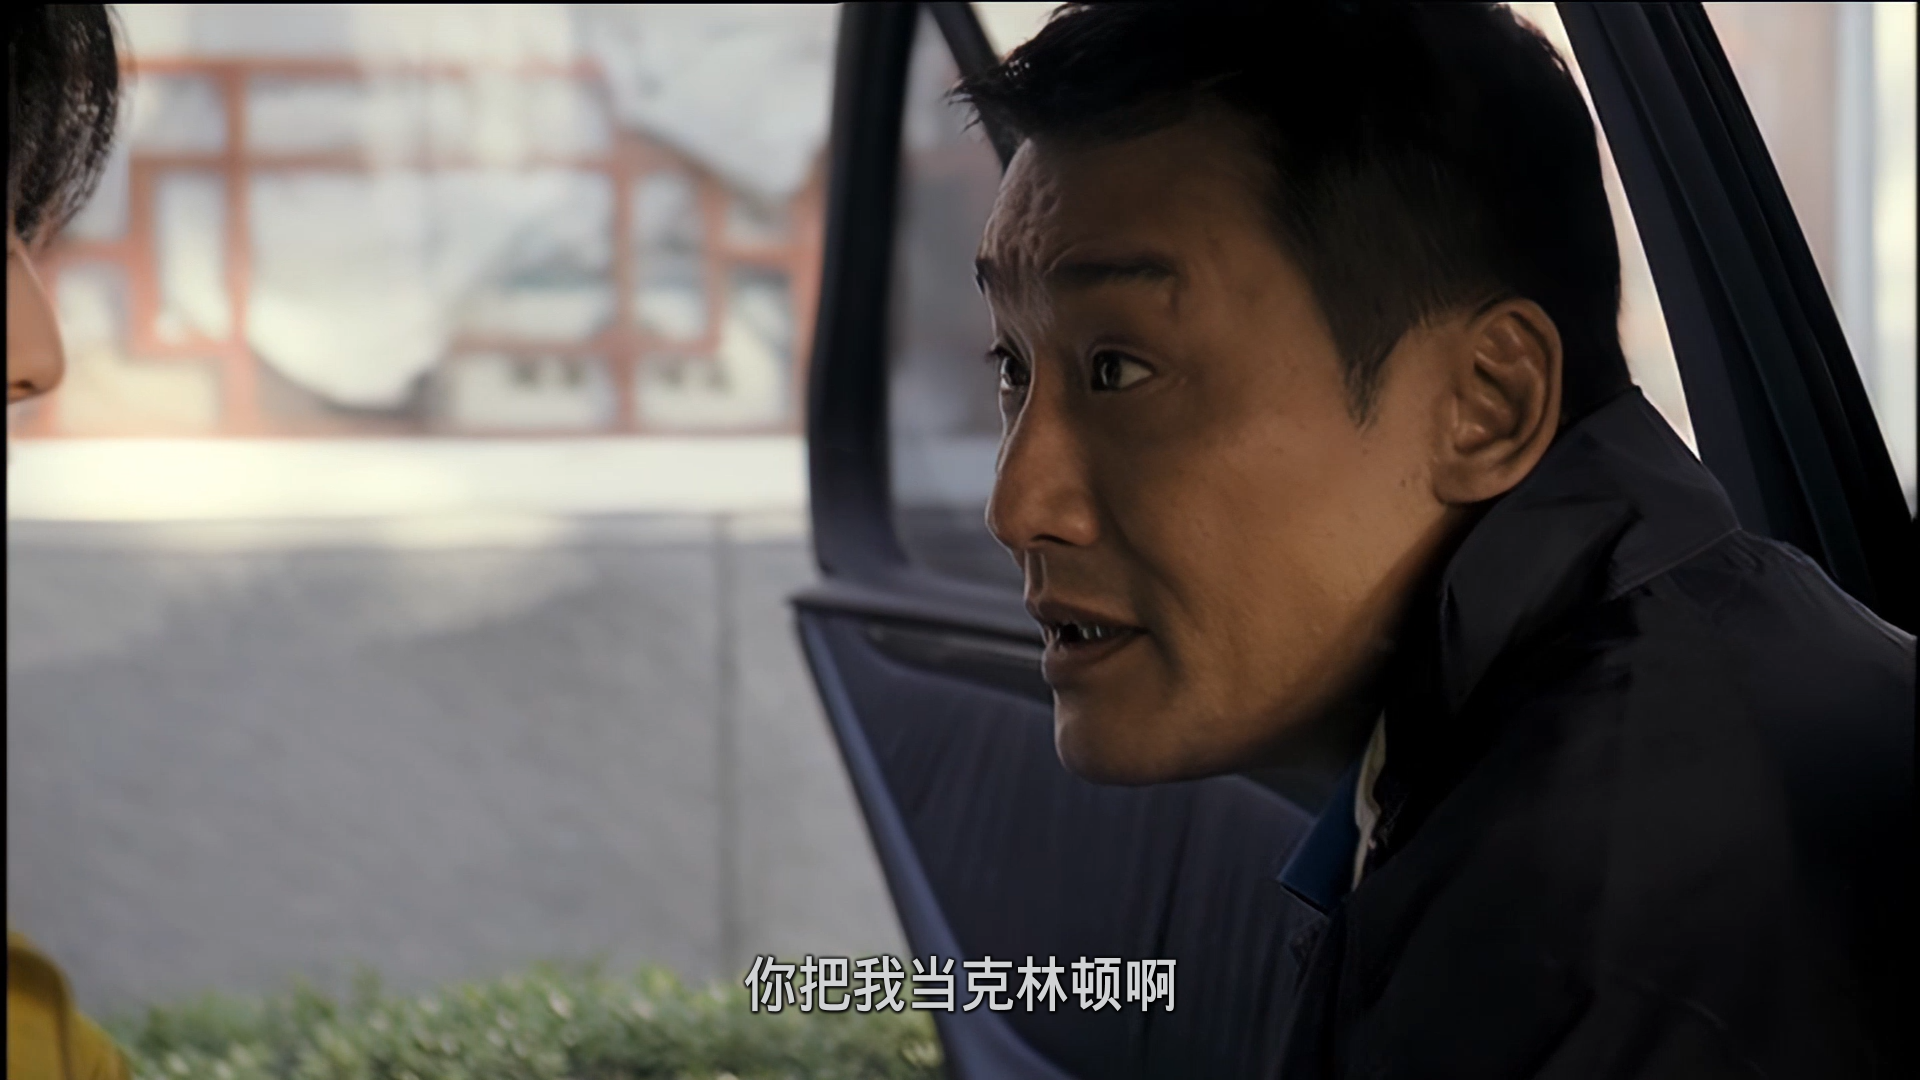 苹果  [DVD原盘修复高清简繁中字][修正上一版时间轴错乱] Lost In Beijing 2007 UNRATED DVD Blu-ray 1080p AVC AC3-5 1-BHYS@OurBits[20.4GB]-6.png